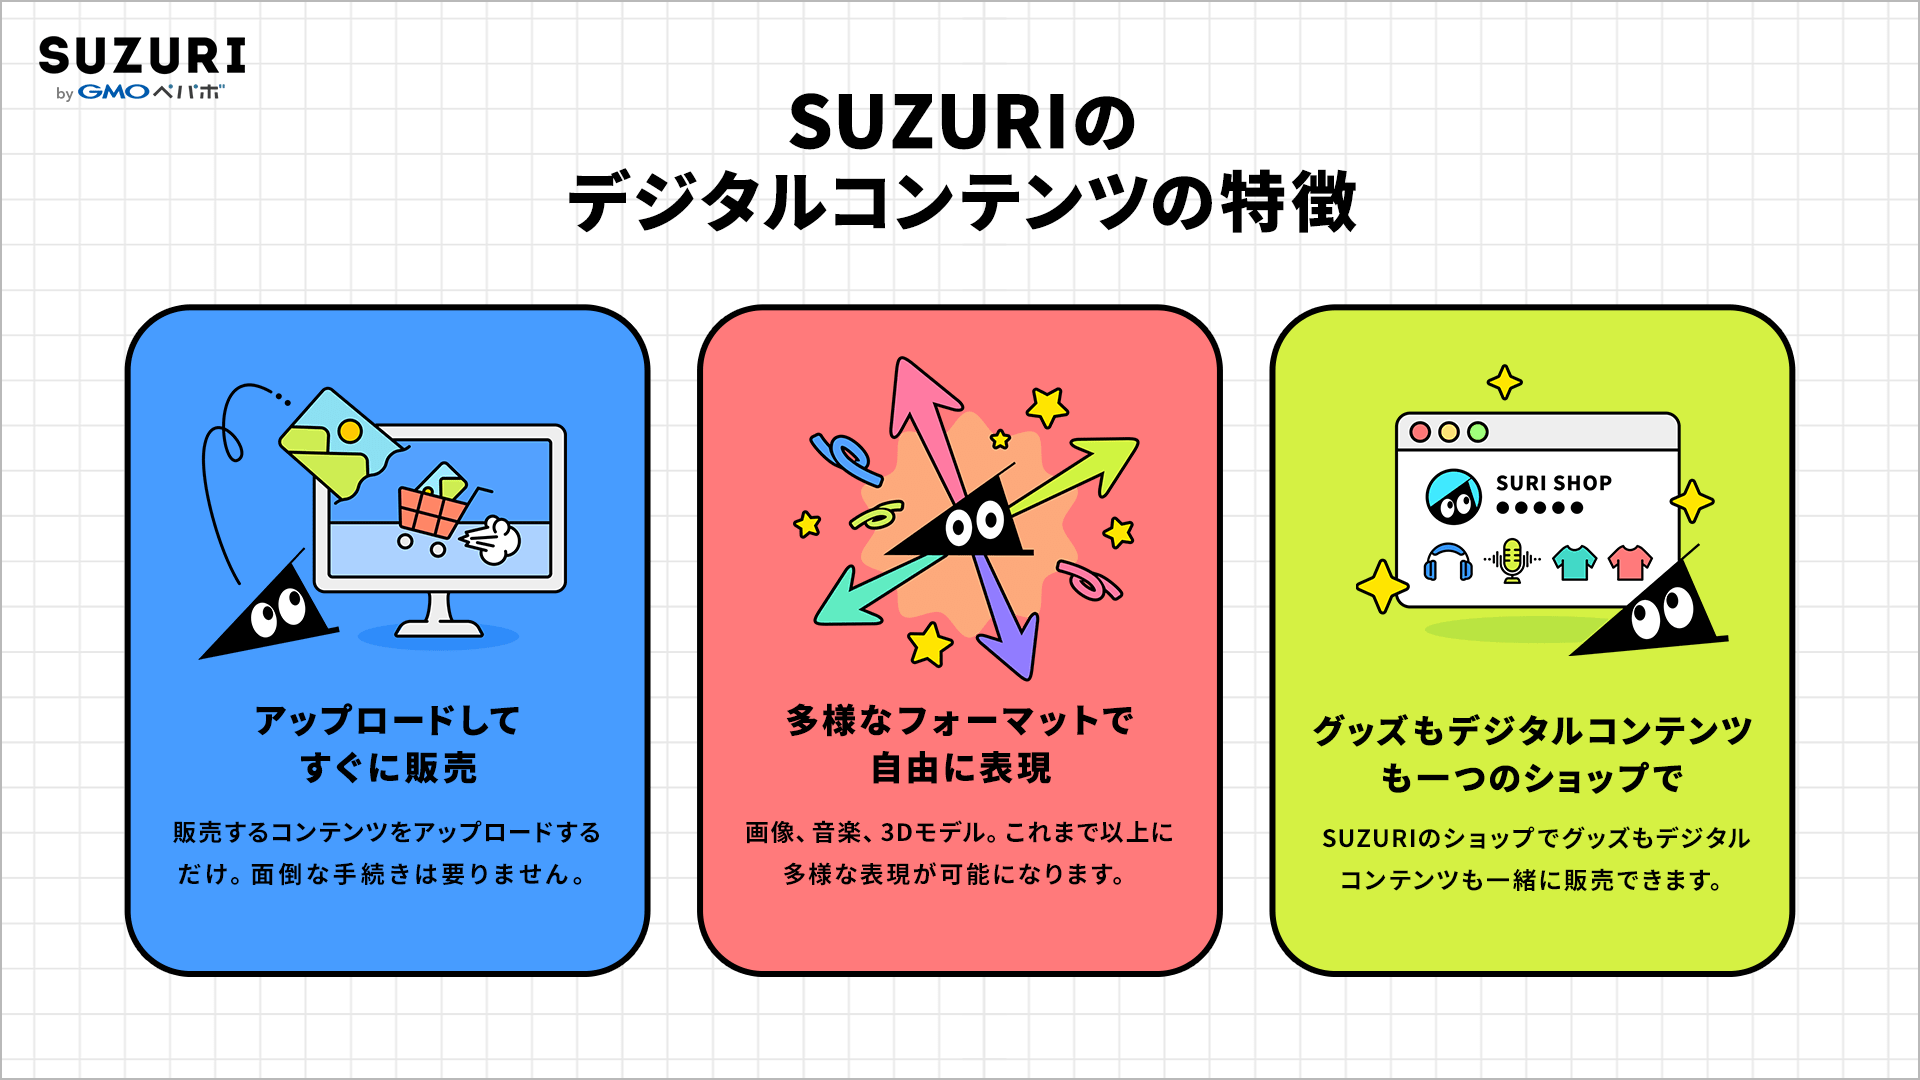 SUZURIのデジタルコンテンツの特徴についてまとめた画像。詳細は本文で後述。